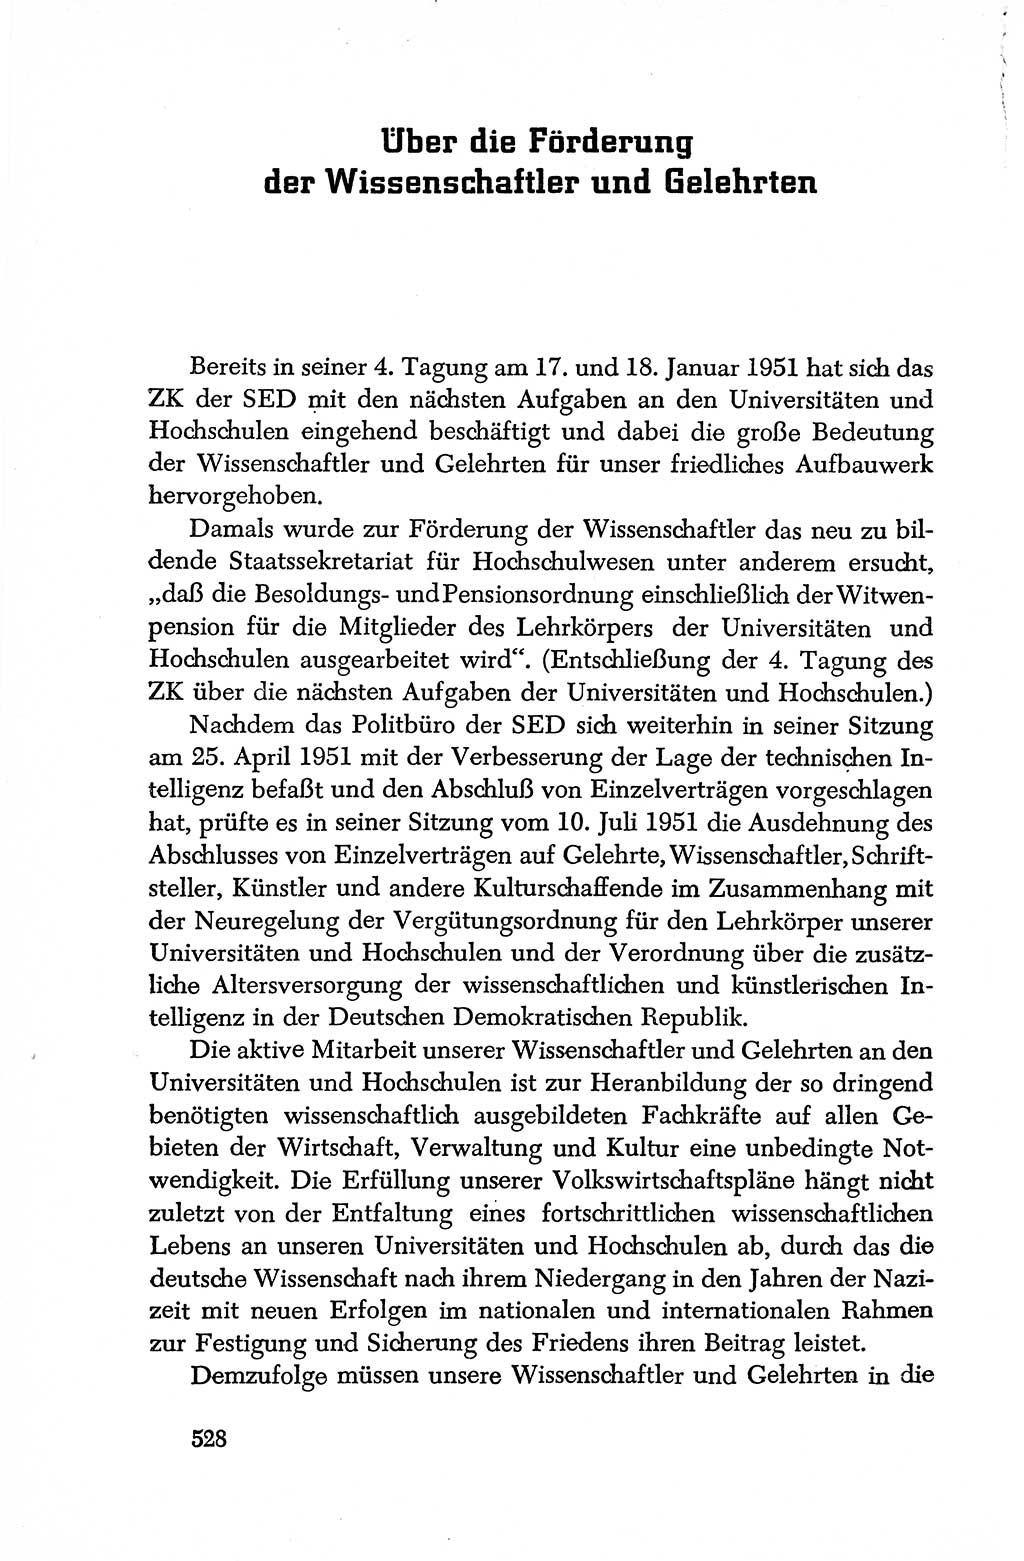 Dokumente der Sozialistischen Einheitspartei Deutschlands (SED) [Deutsche Demokratische Republik (DDR)] 1950-1952, Seite 528 (Dok. SED DDR 1950-1952, S. 528)